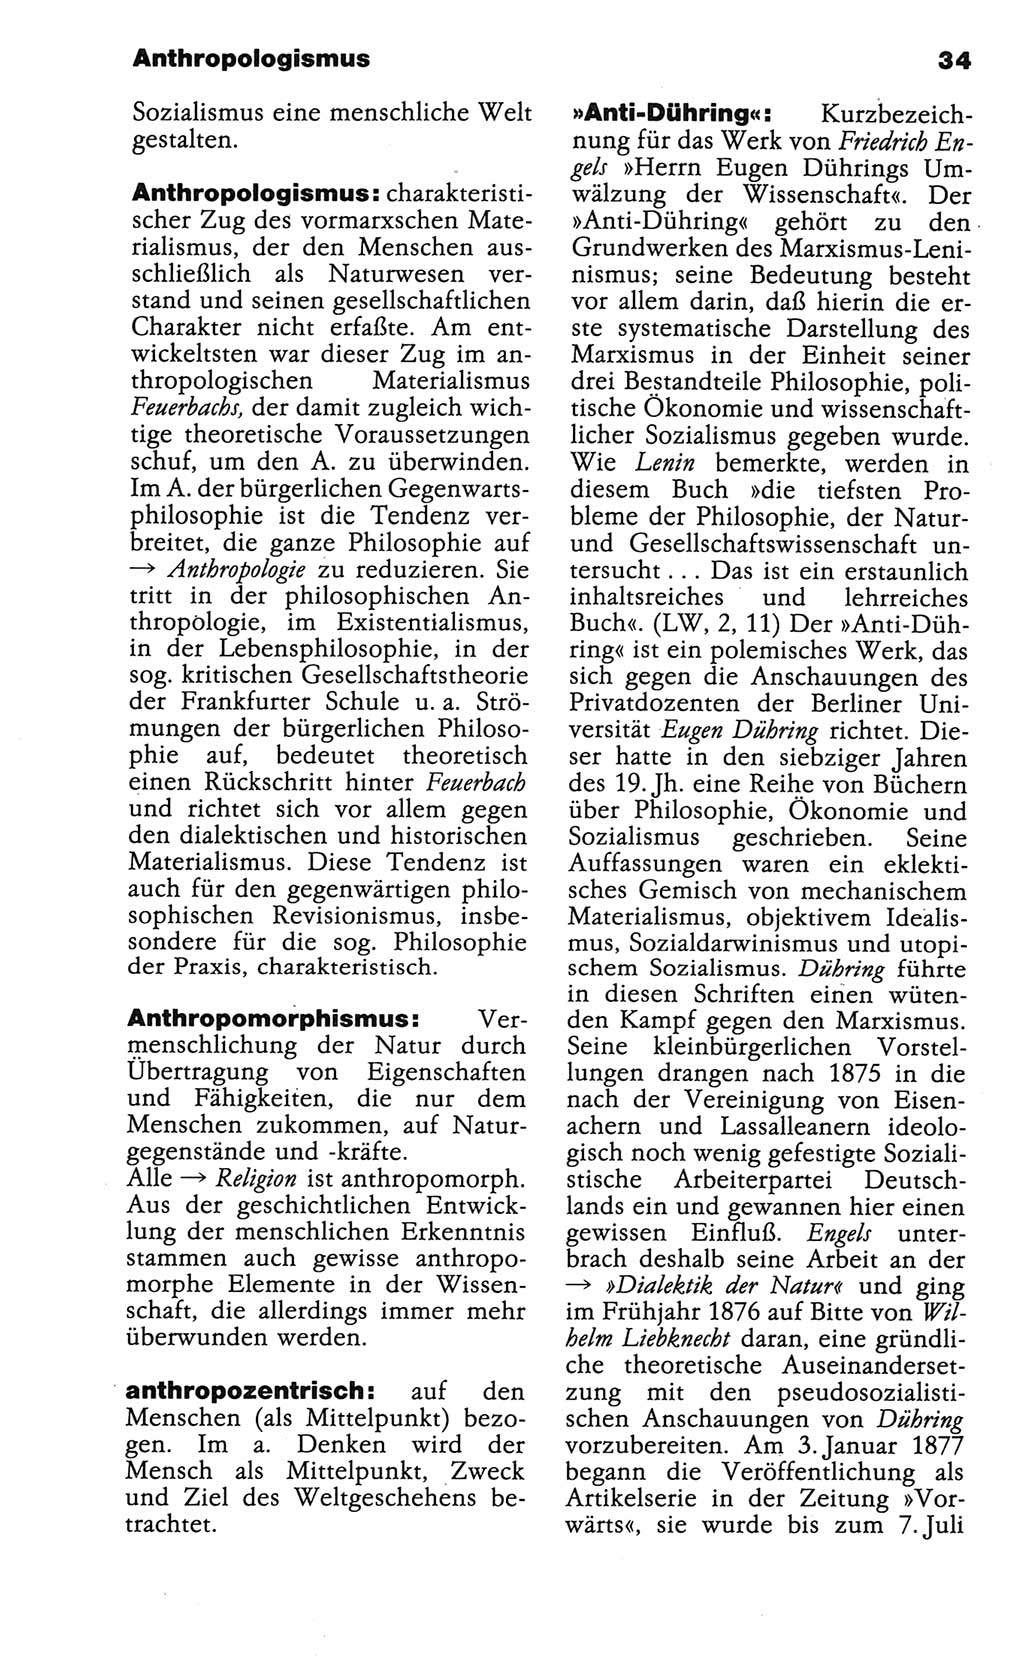 Wörterbuch der marxistisch-leninistischen Philosophie [Deutsche Demokratische Republik (DDR)] 1986, Seite 34 (Wb. ML Phil. DDR 1986, S. 34)